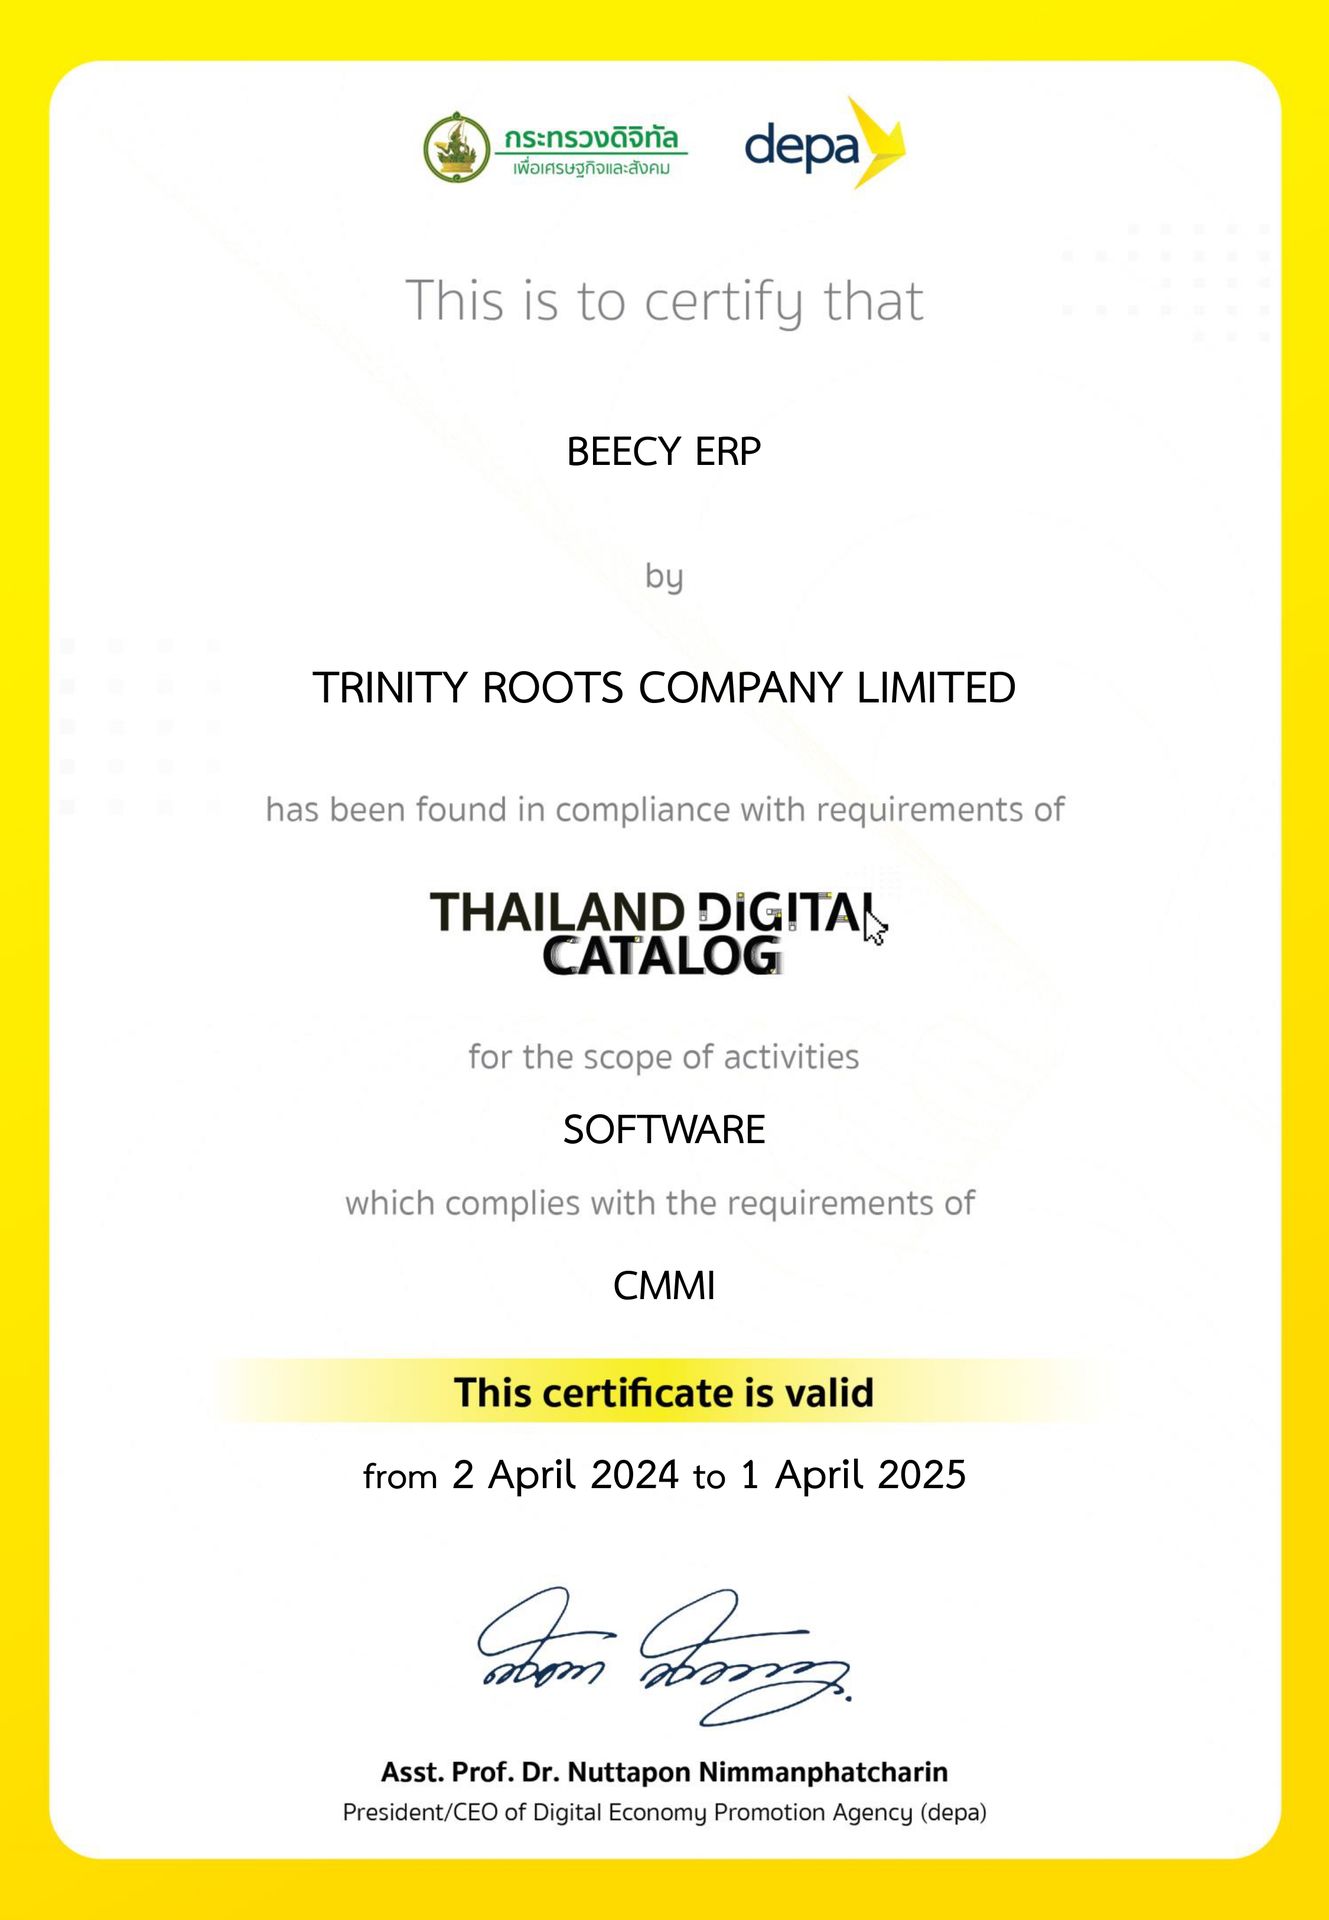 บริษัท ทรีนิตี้ รูทส์ จำกัด เป็นผู้ผ่านการพิจารณาขอขึ้นทะเบียนเป็นผู้ประกอบการดิจิทัลไทยในบัญชีบริการดิจิทัล